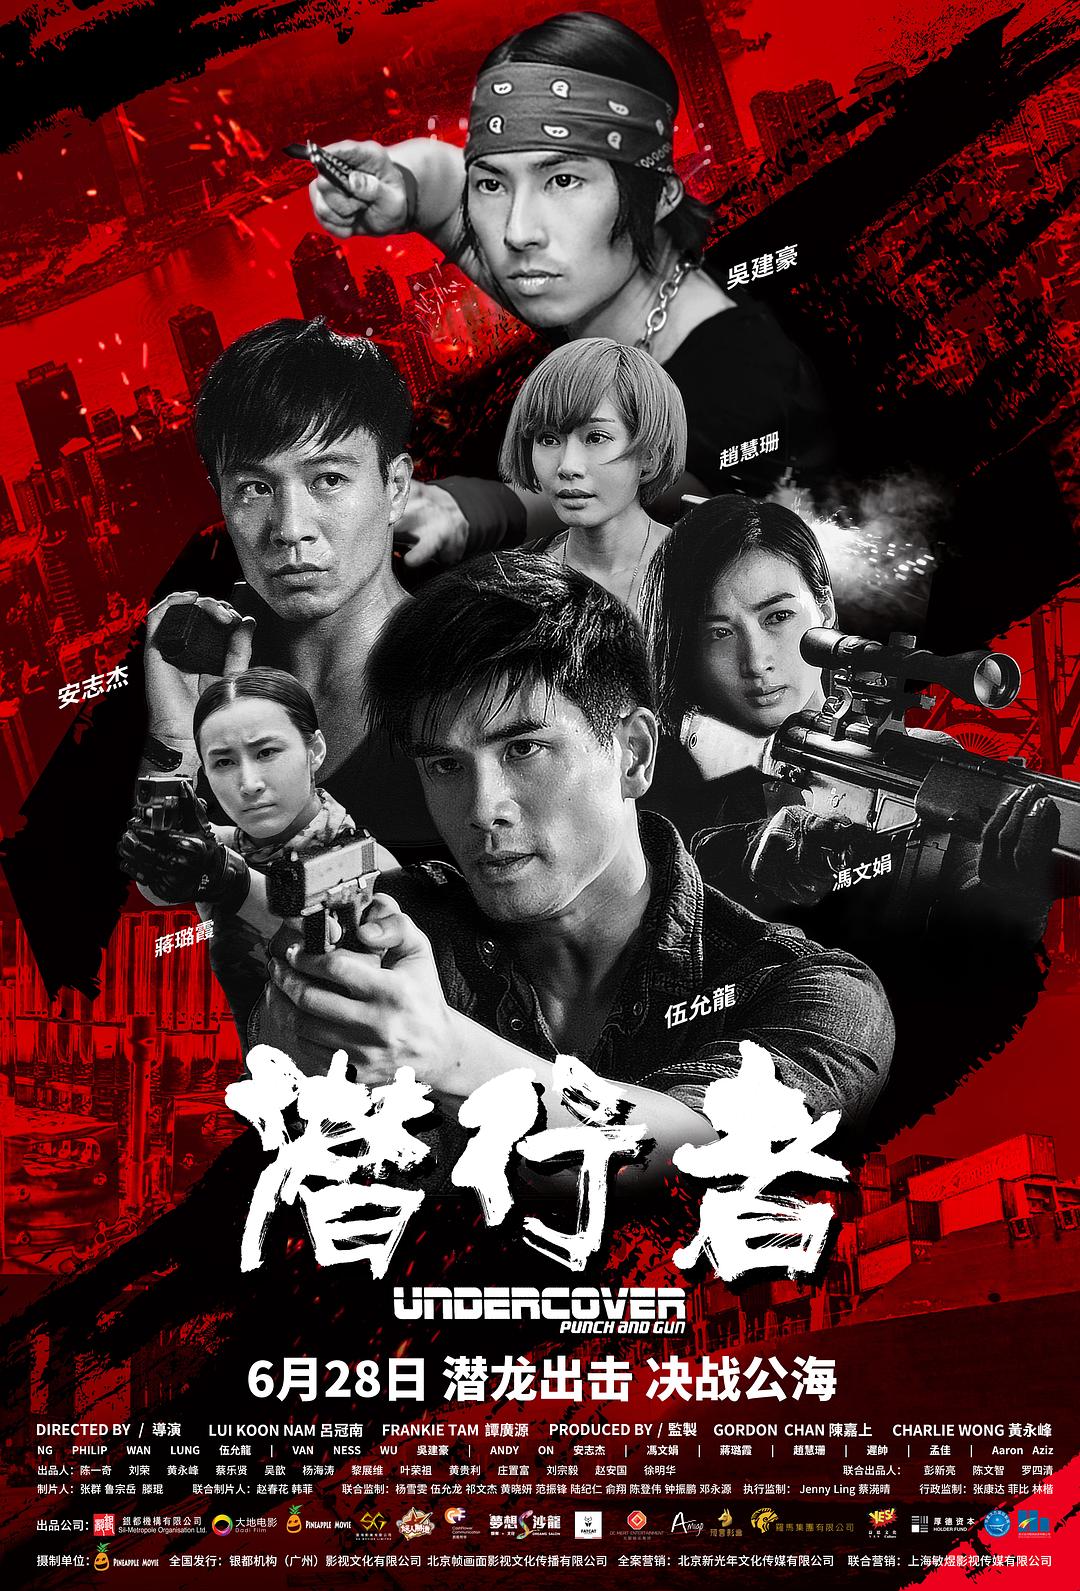 潜行者 Undercover.Punch.and.Gun.2019.CHINESE.1080p.BluRay.x264.DTS-iKiW 8.08GB-1.png